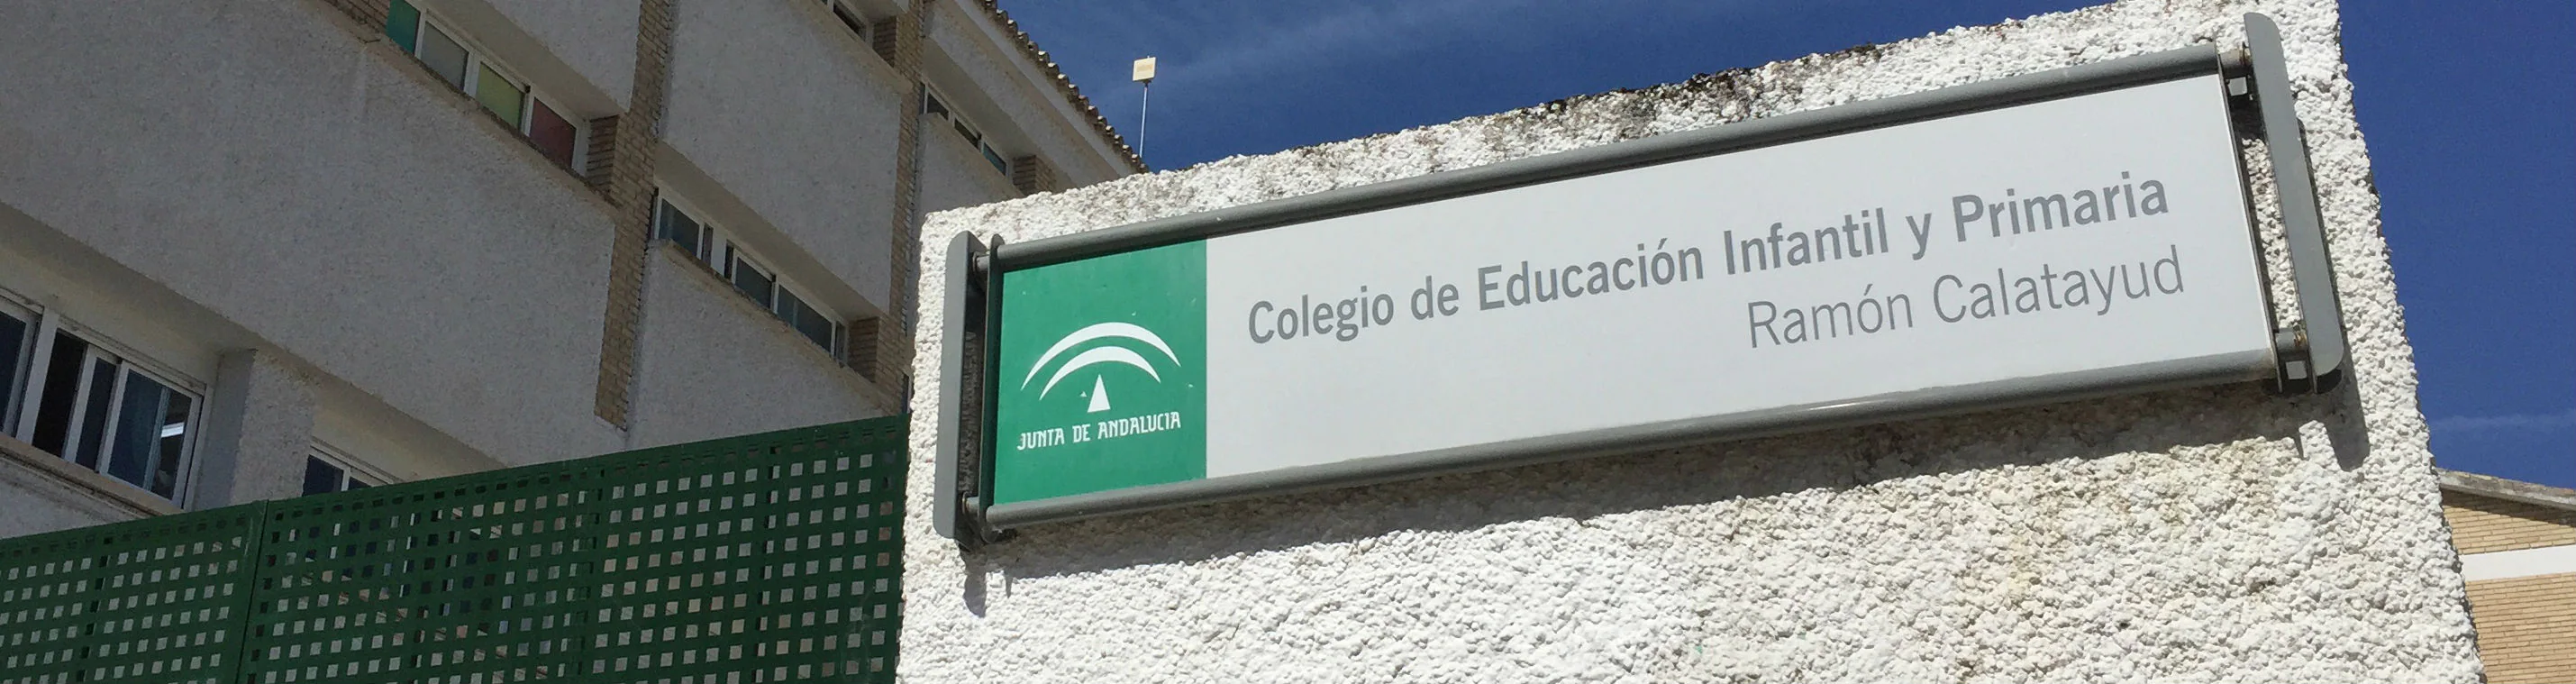 La Junta de Andalucía sustituyó en 2017 el nombre del colegio público Ramón Calatayud